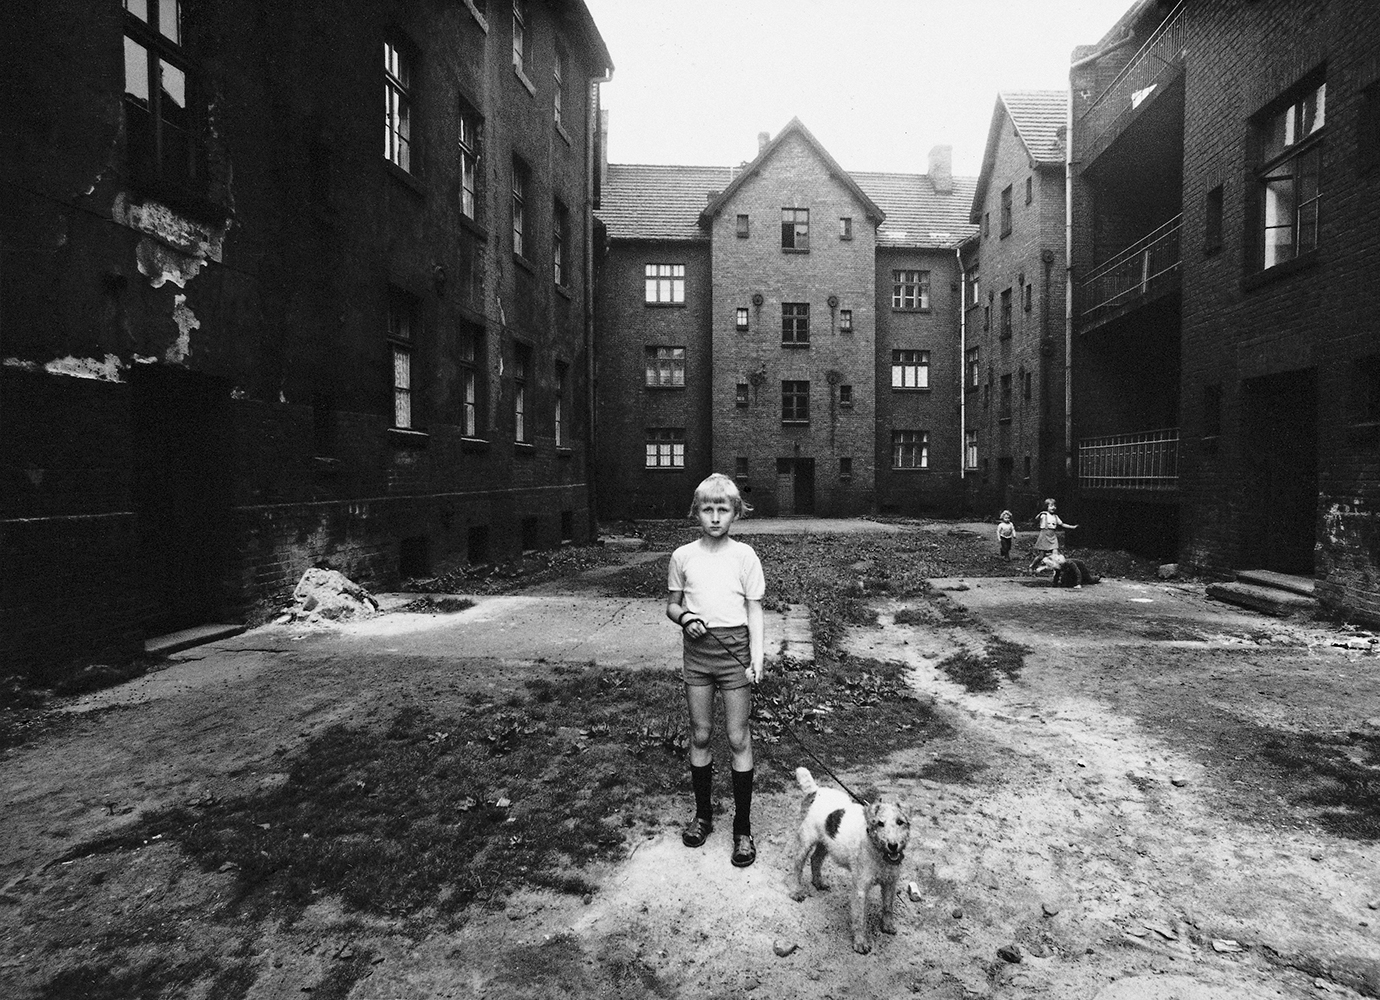  Michał Cała,  A boy with a dog,  1978 